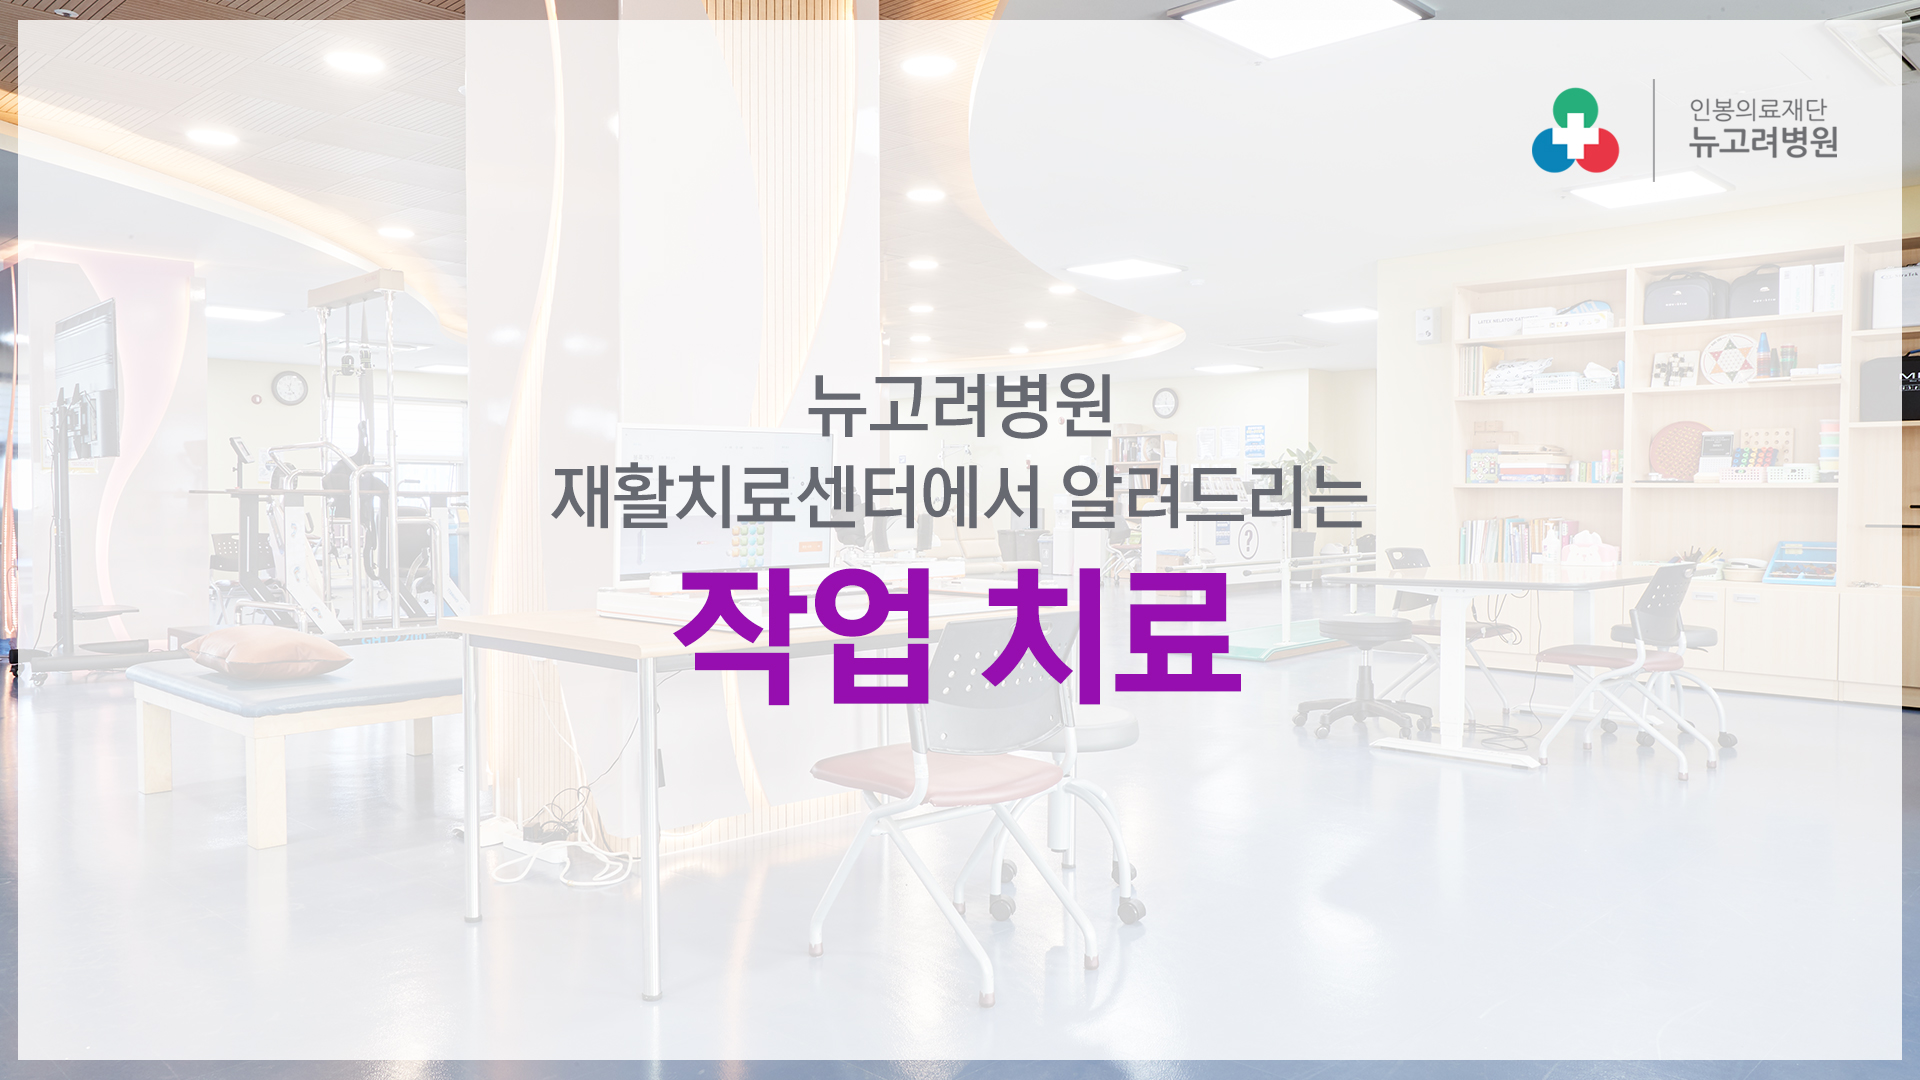 뉴고려병원 재활치료센터 작업치료 소개